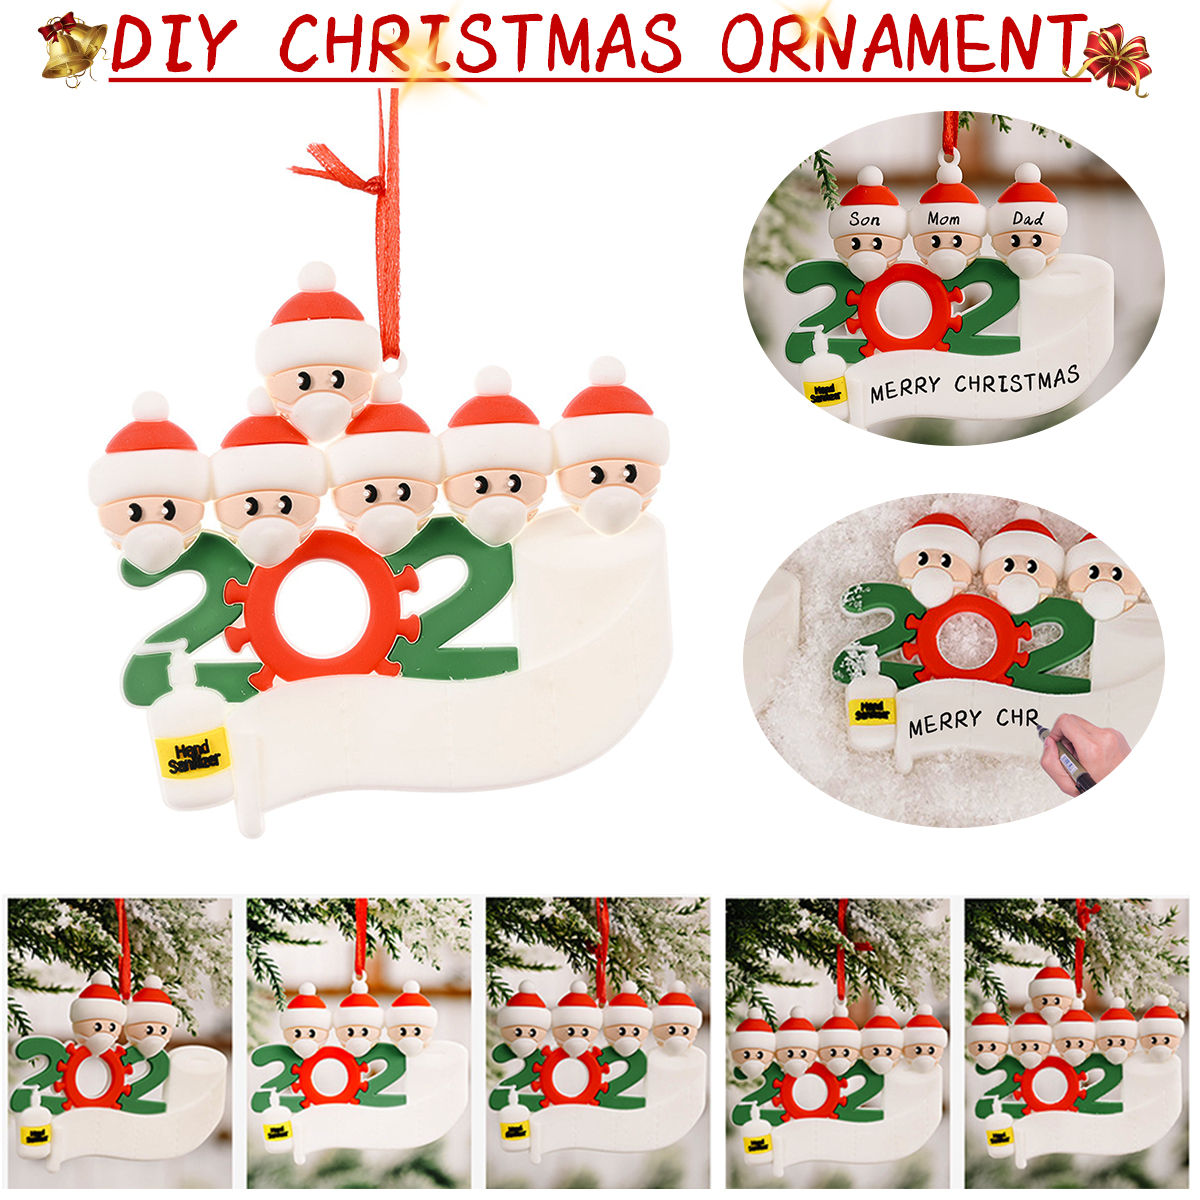 Mask-Santa-Snowman-Ornament-DIY-Name-Greetings-Christmas-Tree-Ornament-for-Christmas-Tree-Decoration-1786417-1